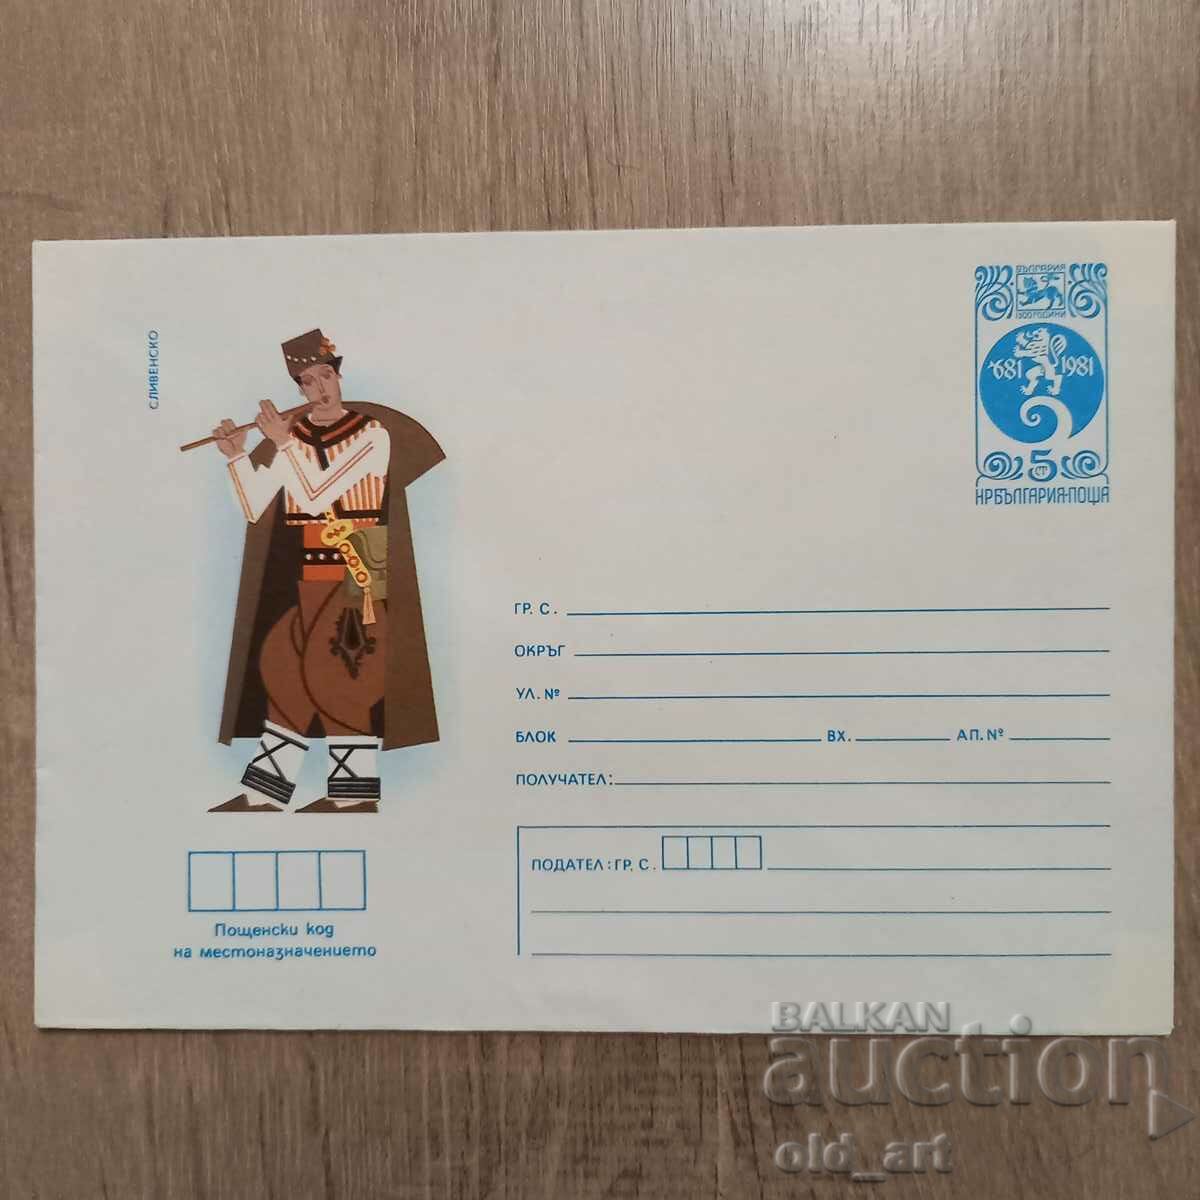 Postal envelope - Folk costumes - Sliven